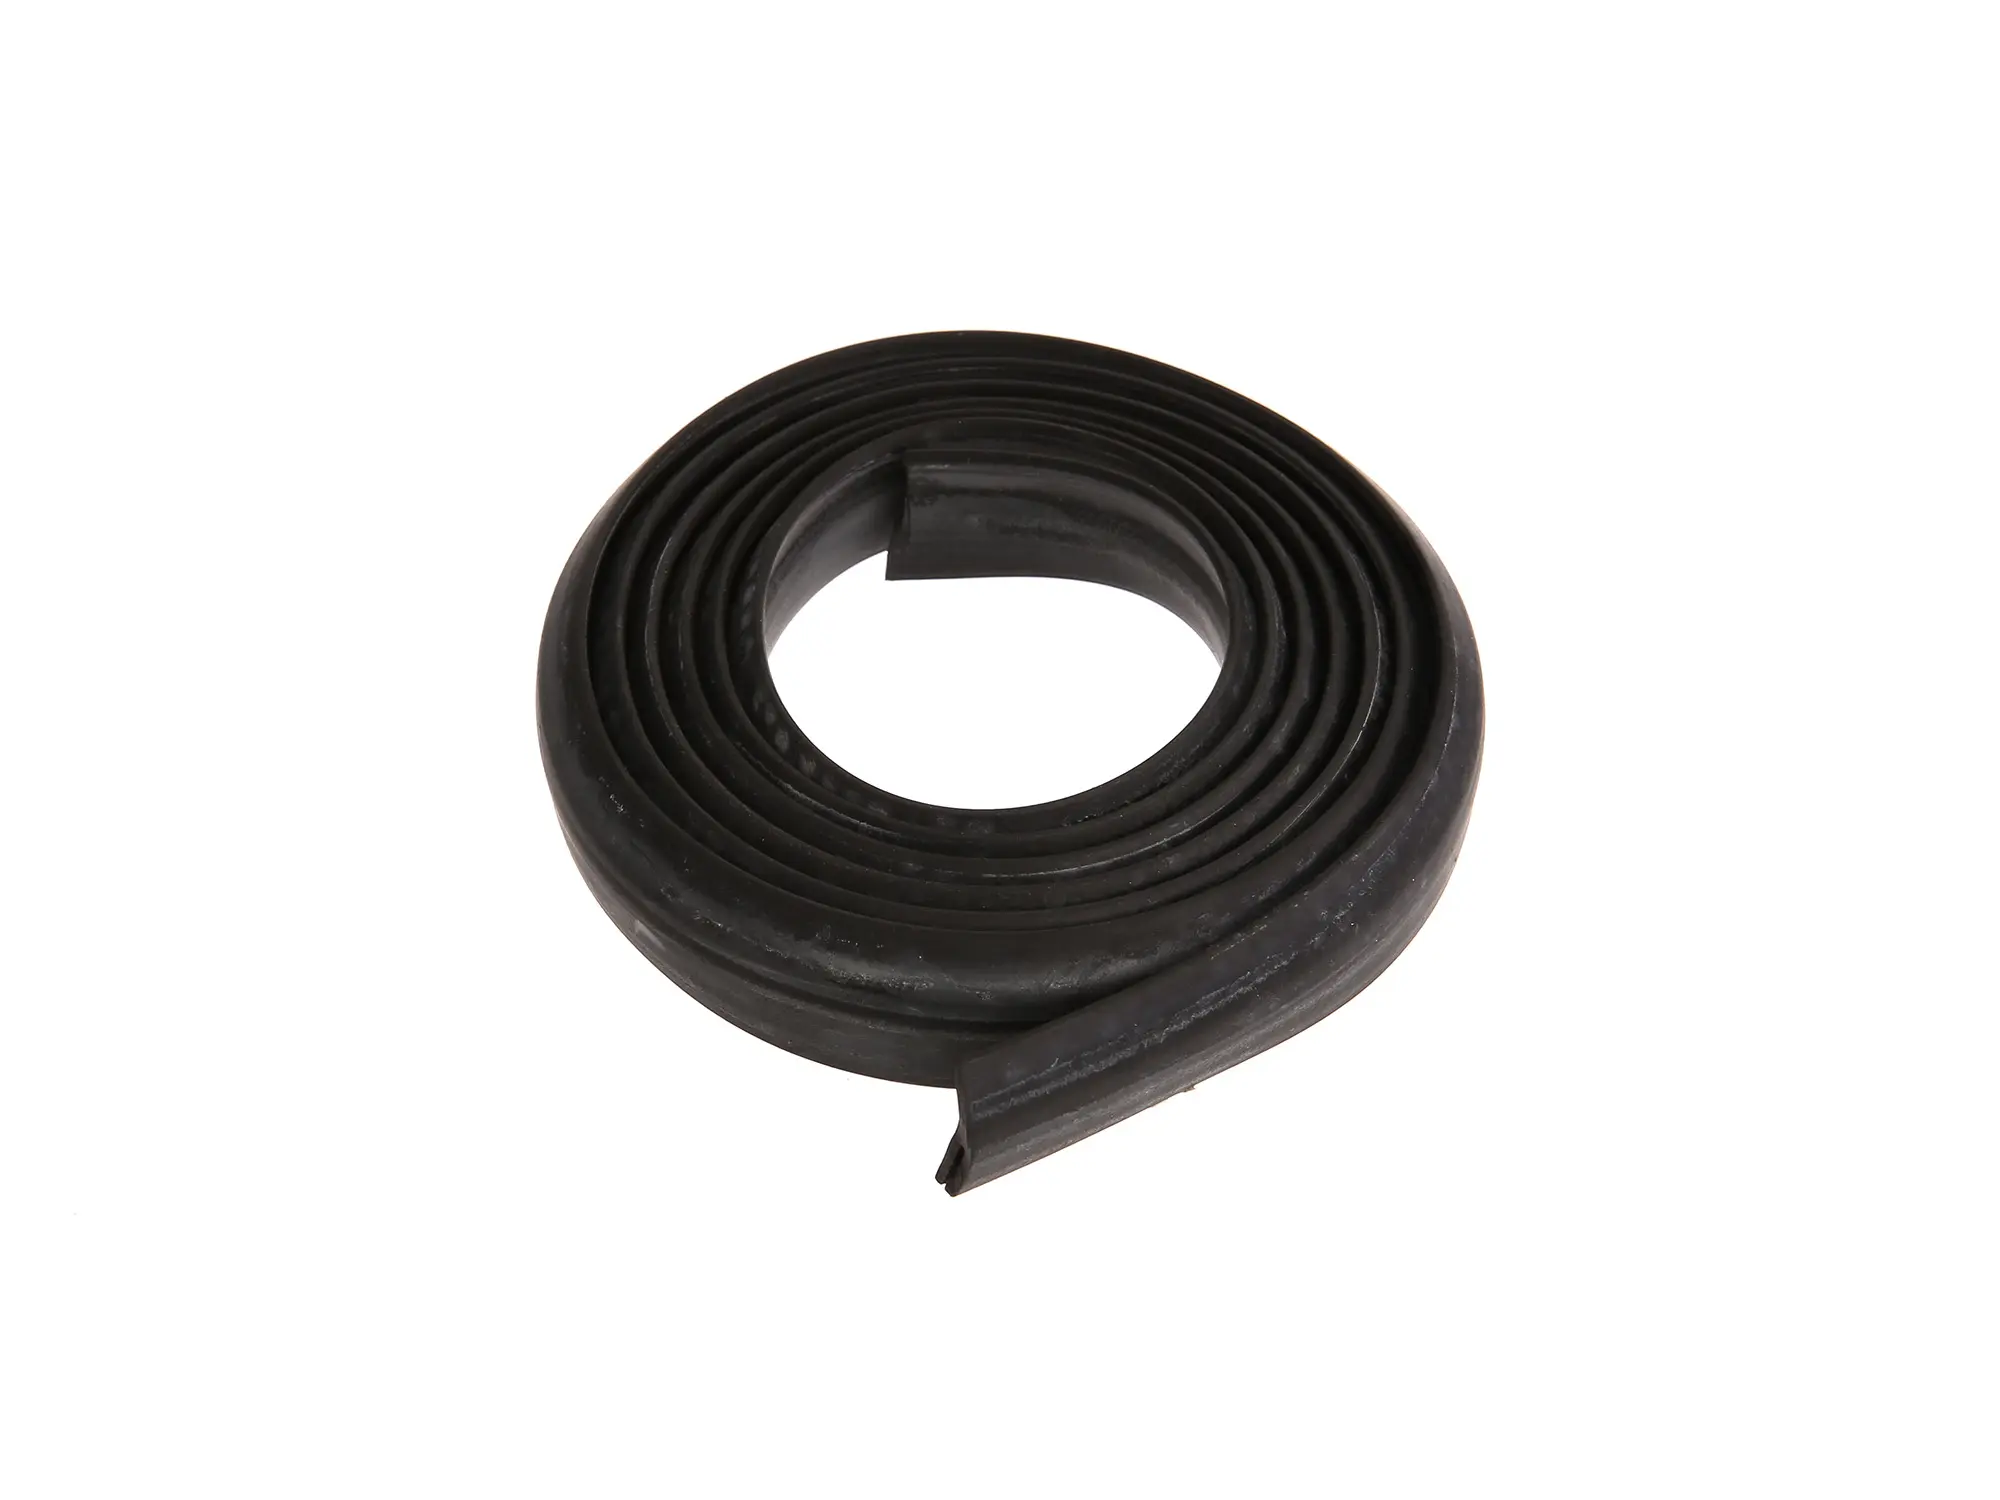 Gummikeder schwarz - für Vorderrad-Kotflügel - Länge ca. 1600 mm - ES 175, ES250, ES300, Art.-Nr.: 10066291 - Bild 1